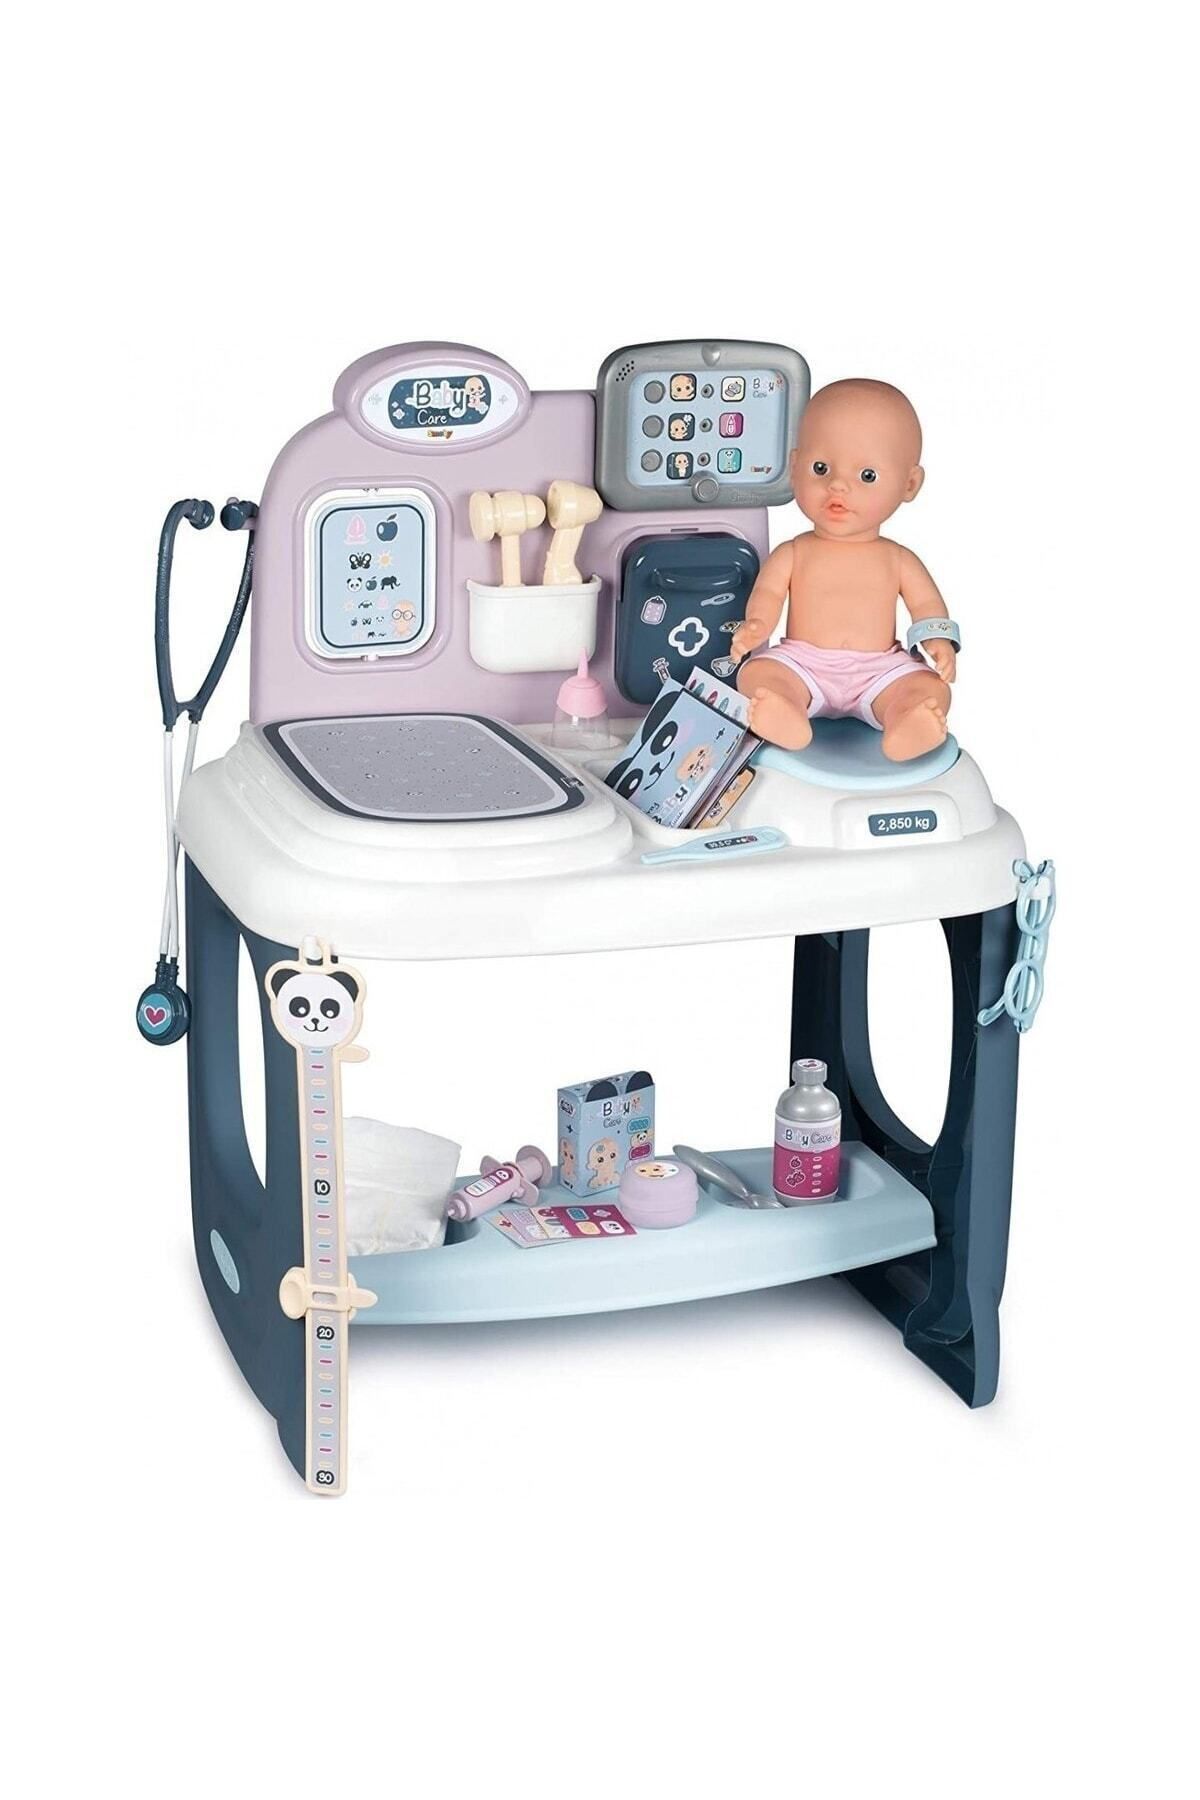 Birlik Oyuncak 7600240300 Smoby, Baby Care Center - Bebek Bakım Merkezi ( 30 Cm Çiş Bebek Dahildir) / 3-8 Yaş